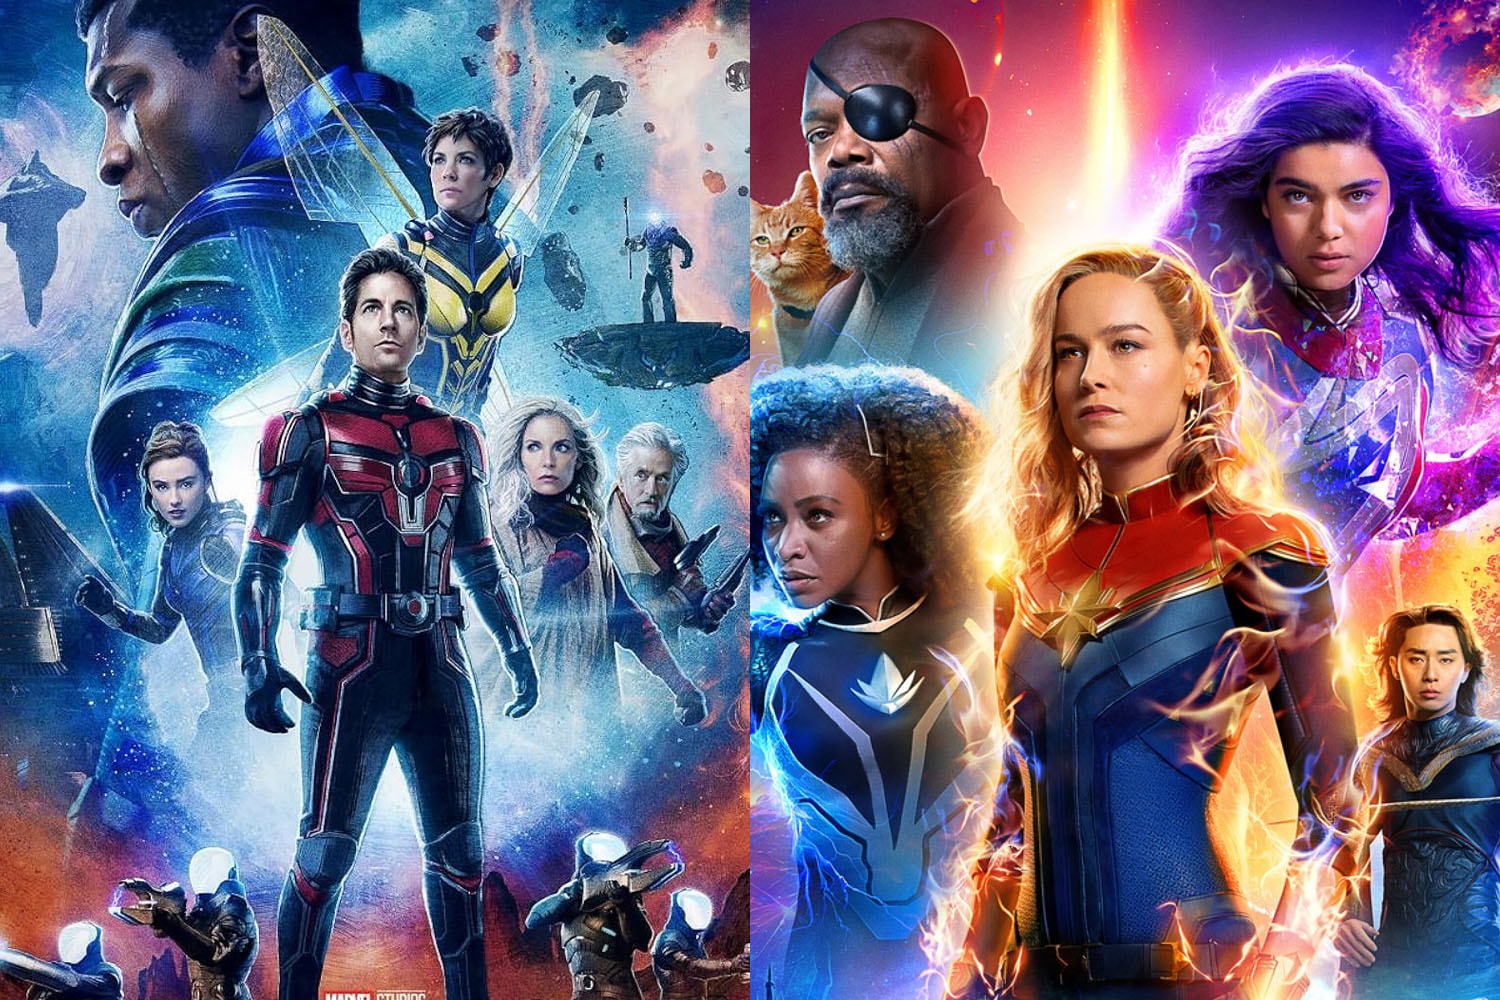 消息稱 Marvel 無計劃再推出《驚奇隊長 3》、《蟻人 4》兩部續集電影